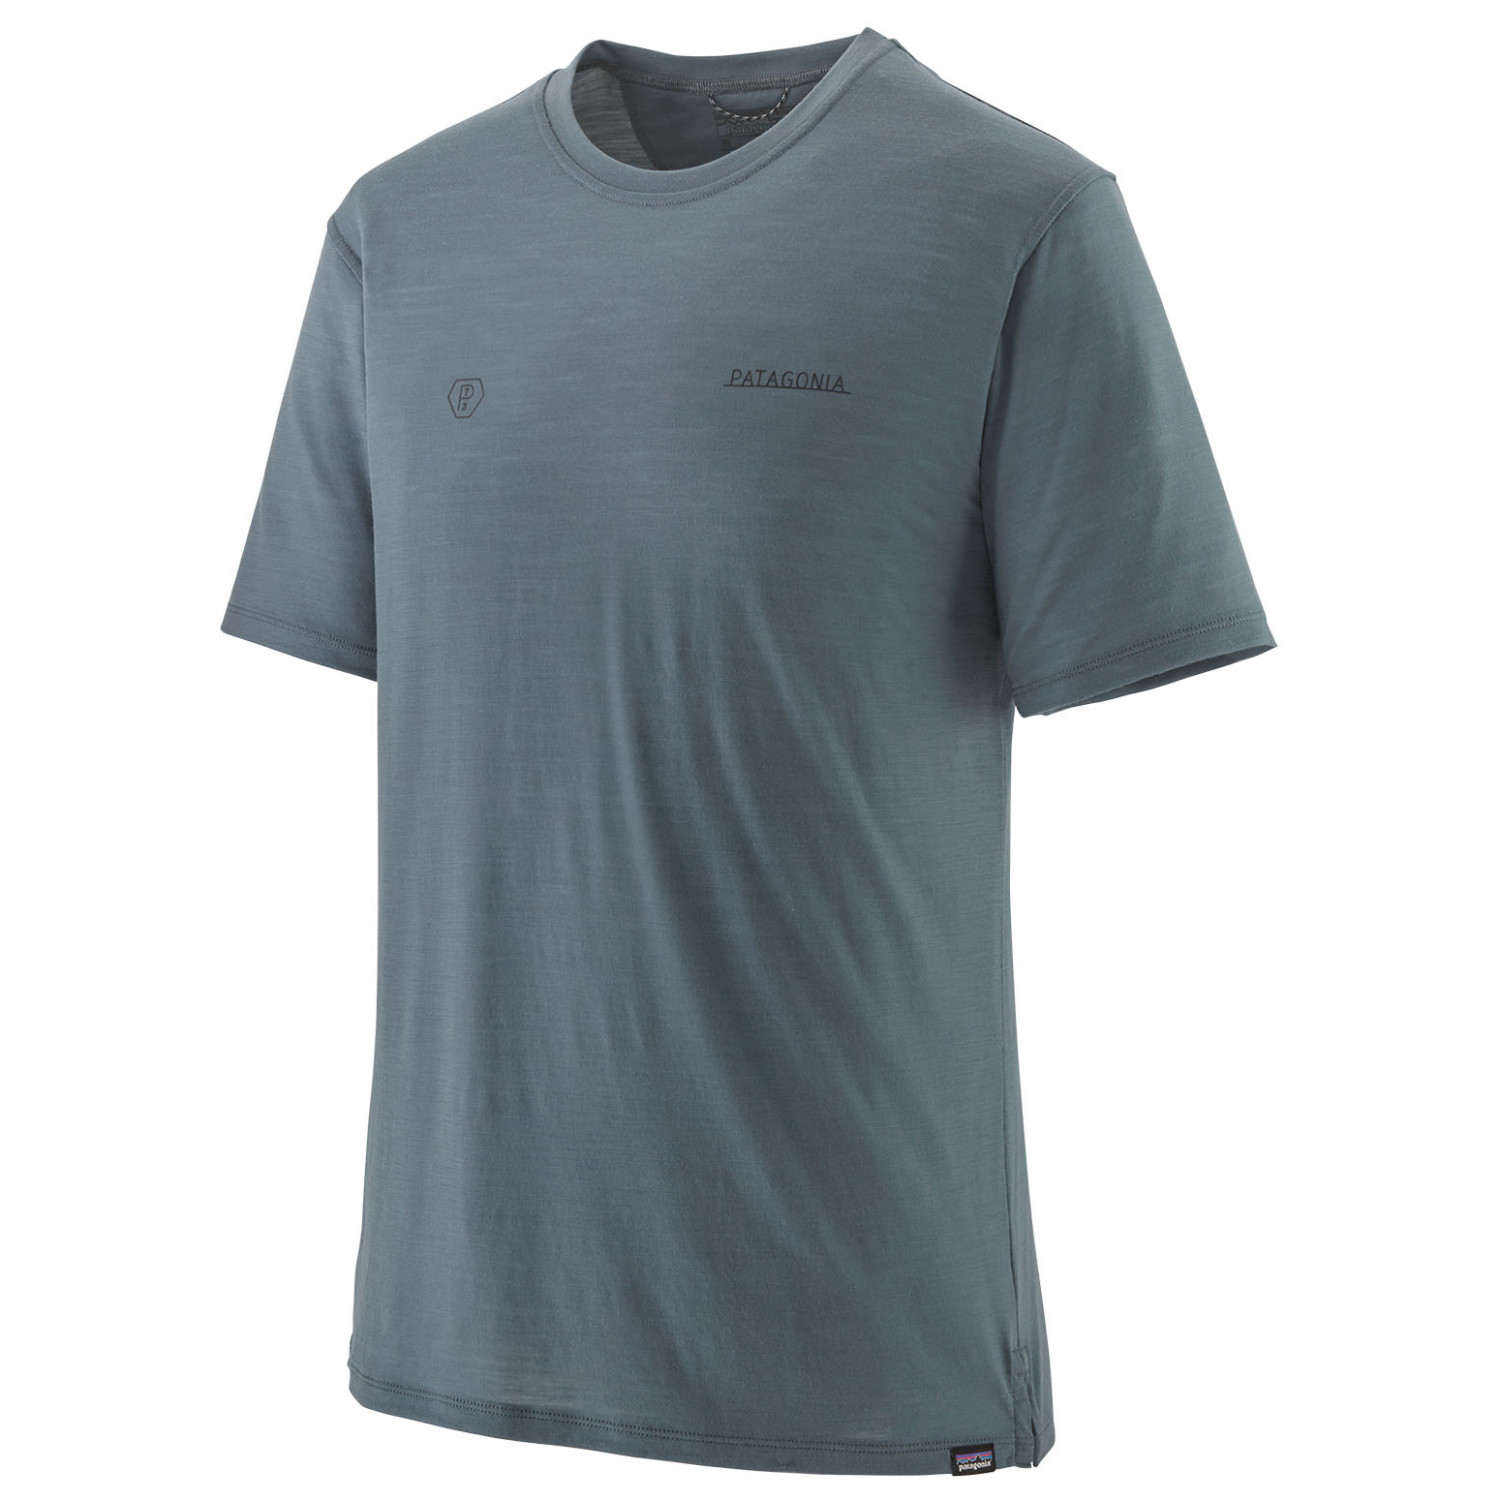 Рубашка из мериноса Patagonia Cap Cool Merino Graphic Shirt, цвет Forge Mark Icons/Plume Grey